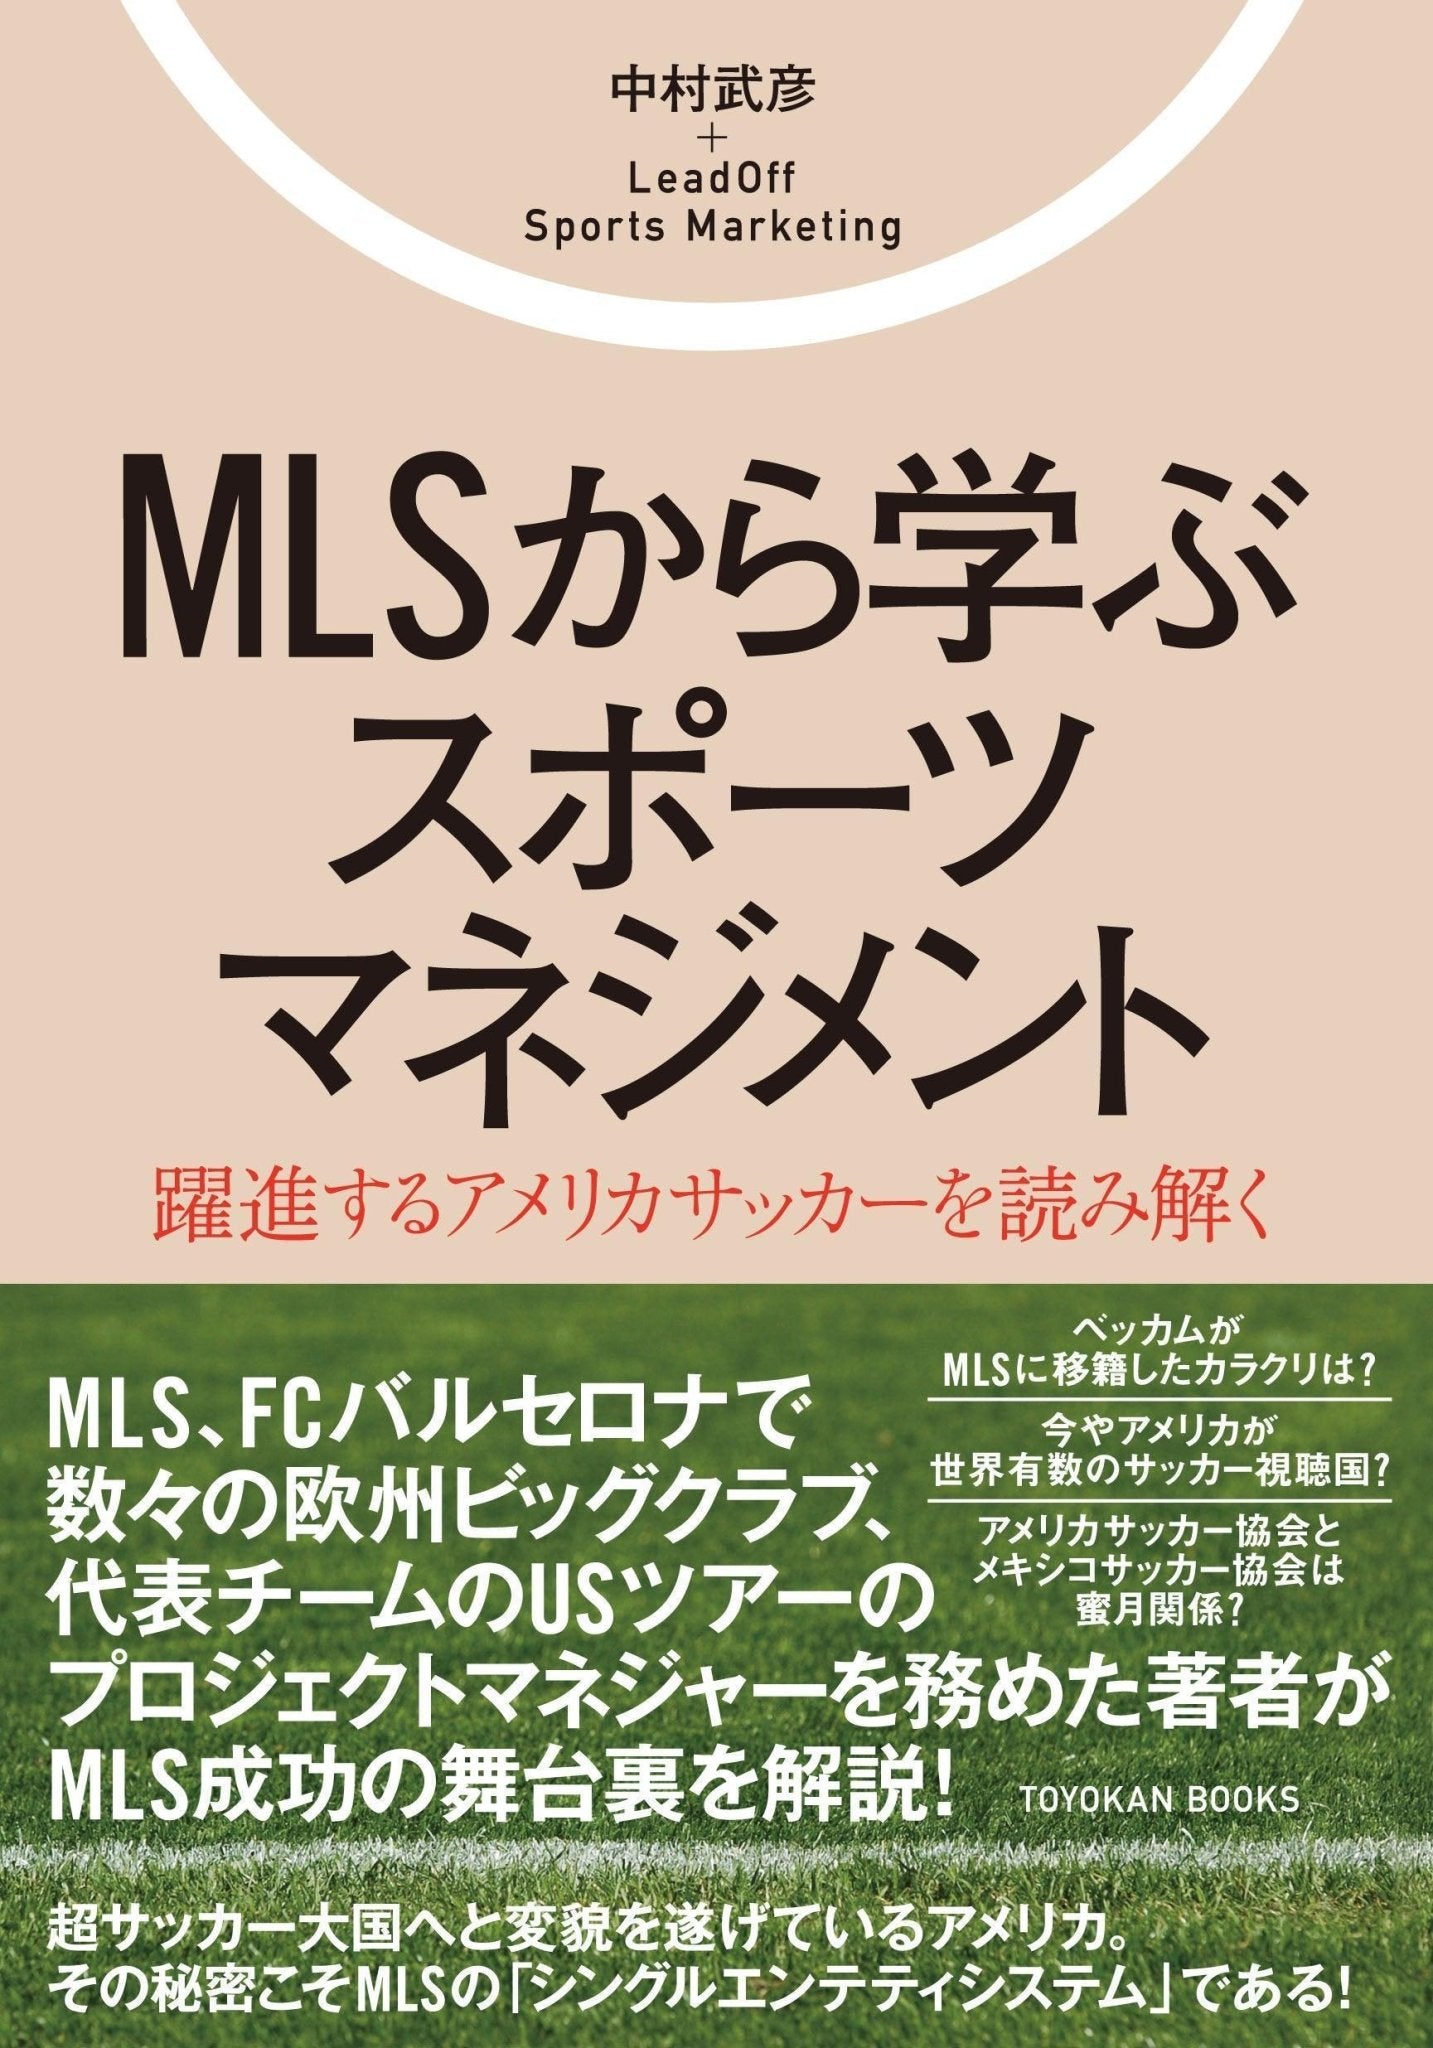 MLSから学ぶスポーツマネジメント - 東洋館出版社